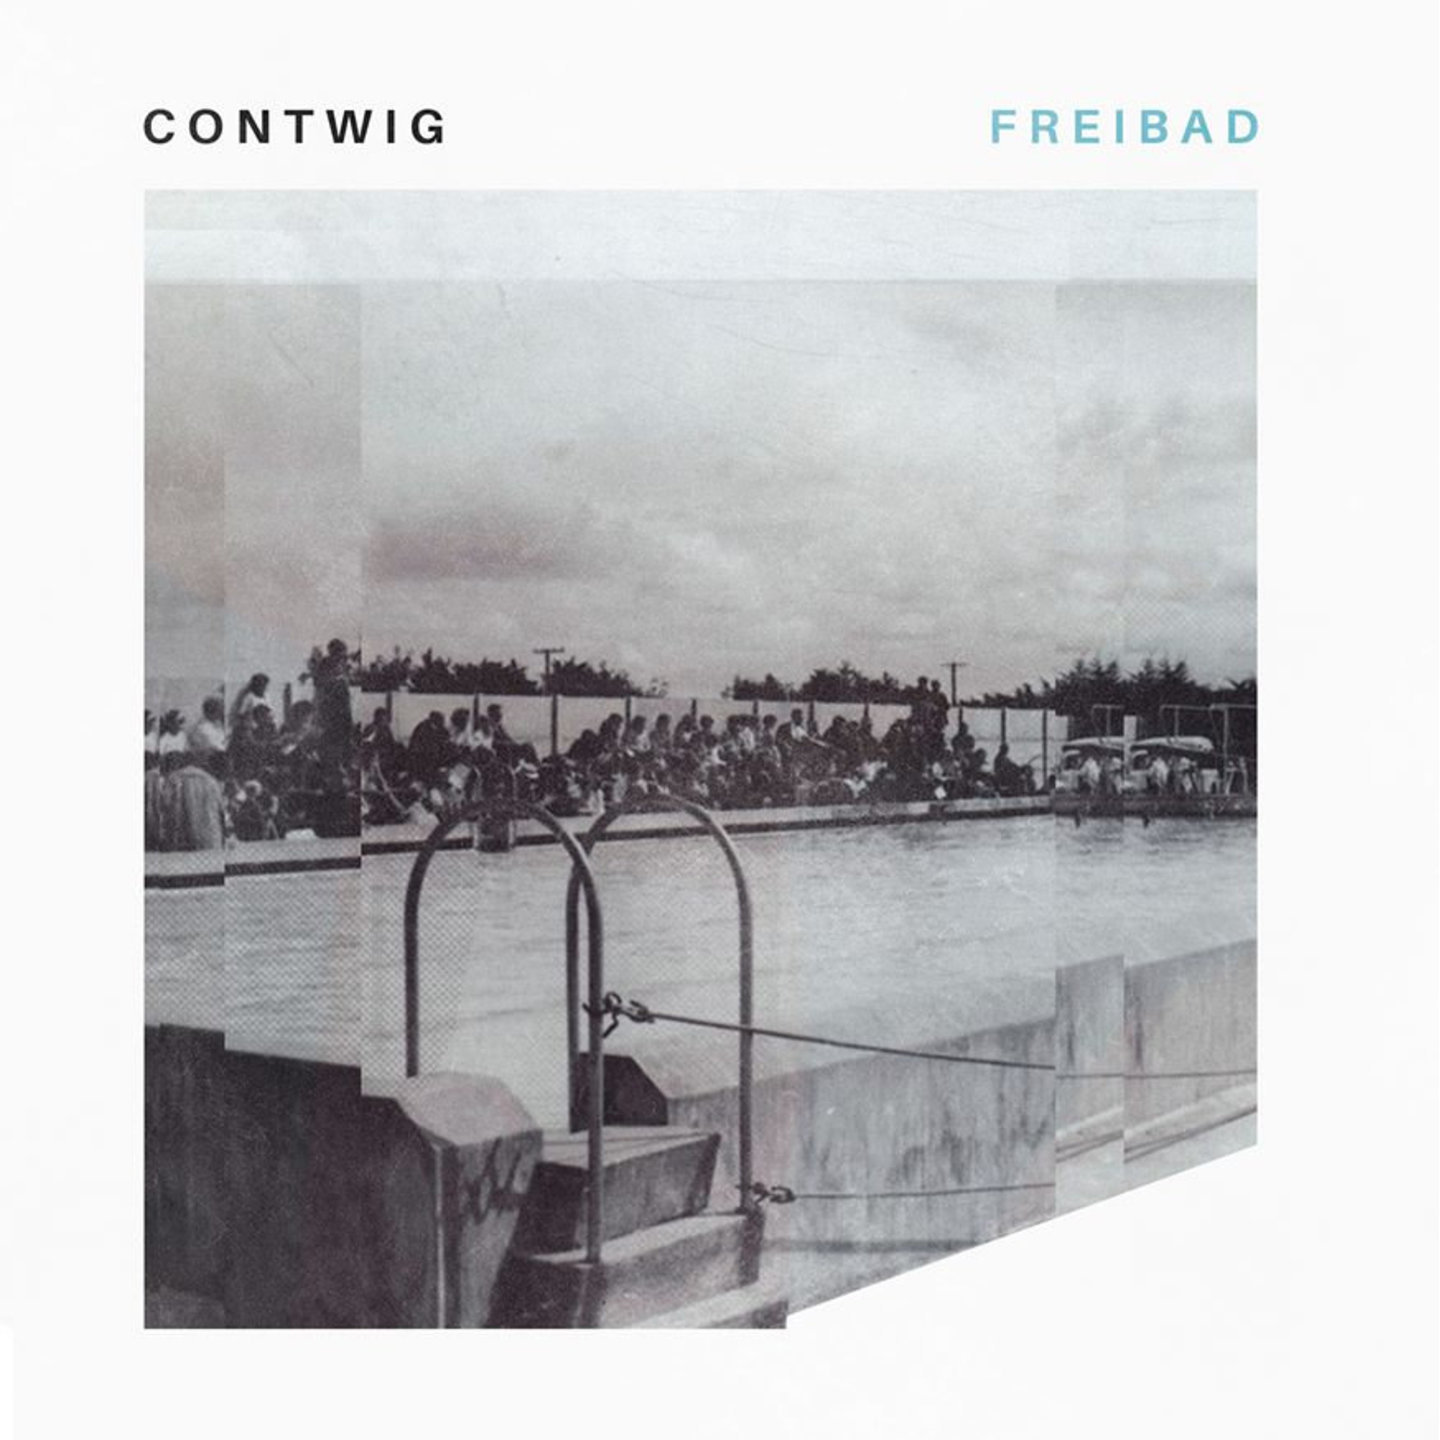 CONTWIG - Freibad LP